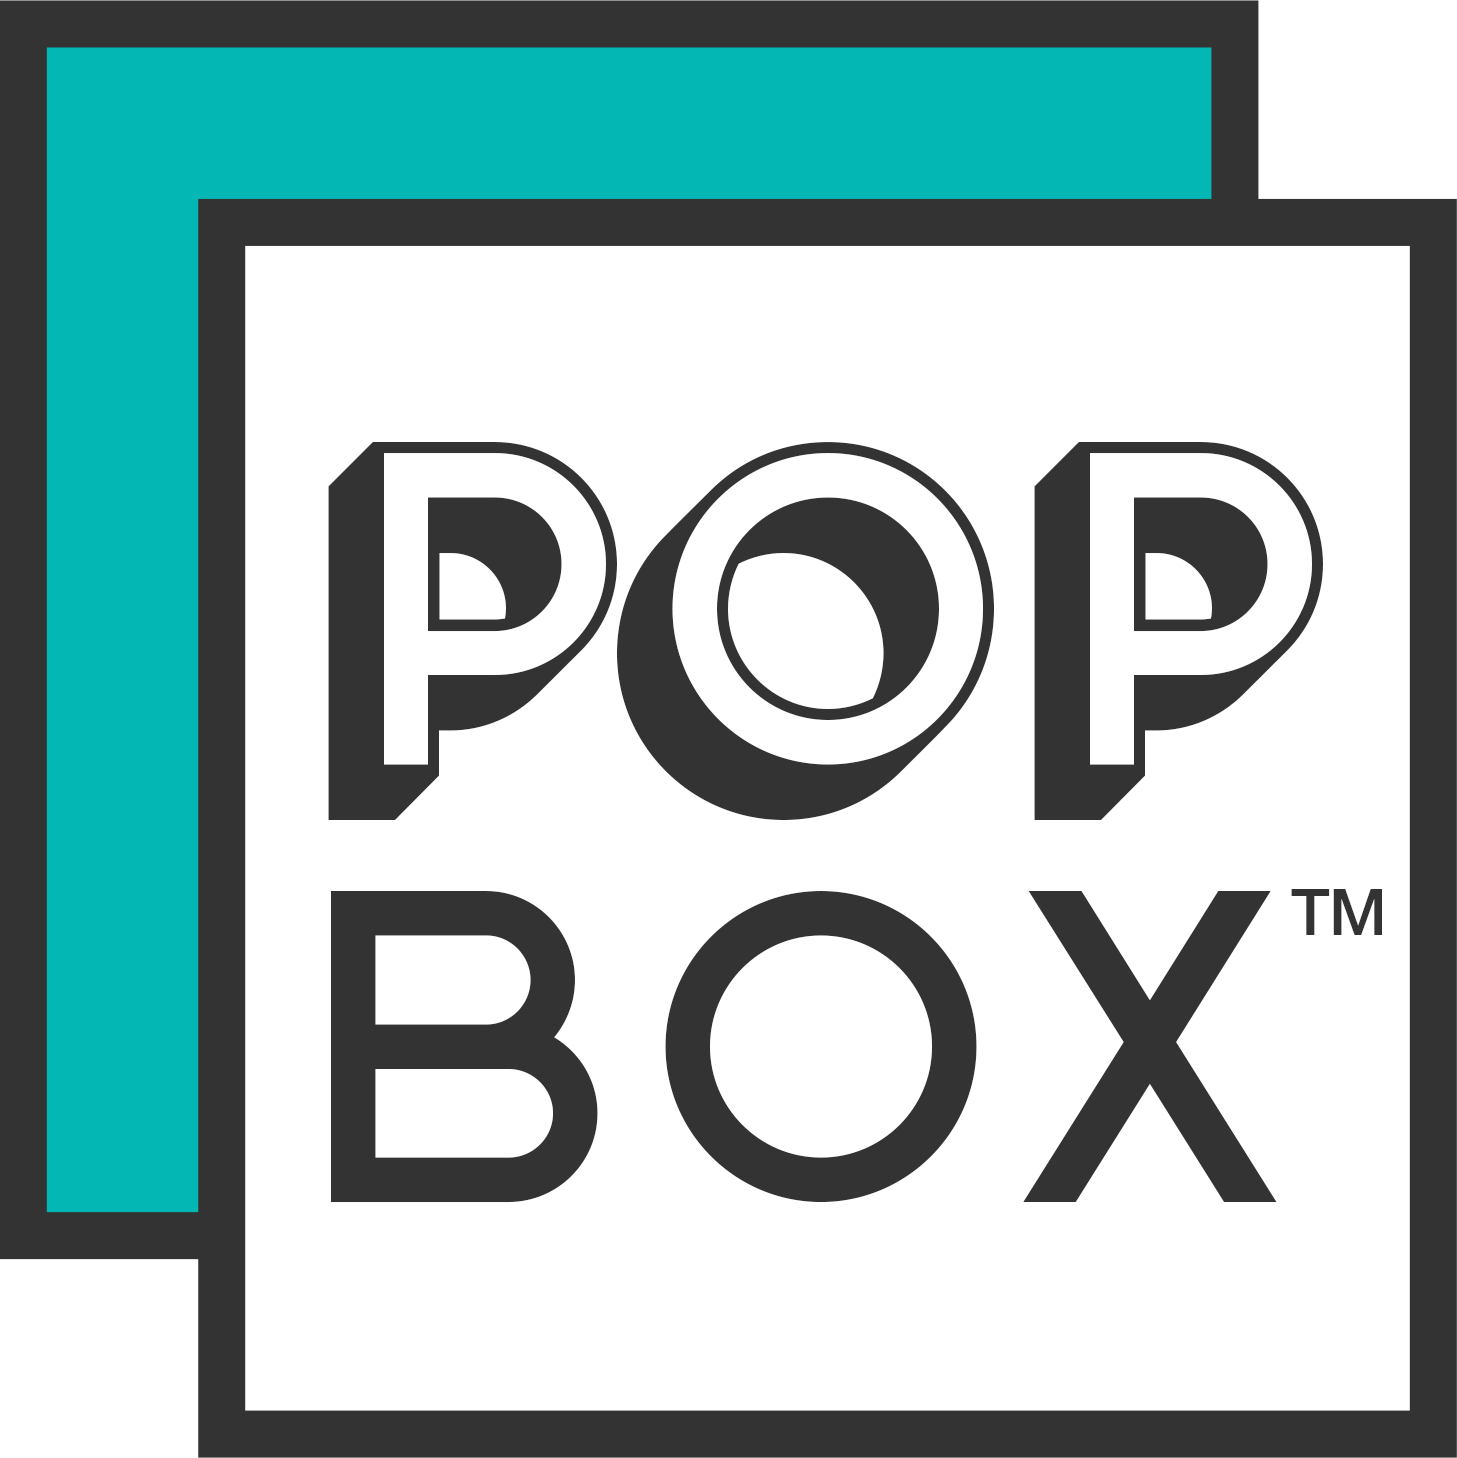 Pop boxes